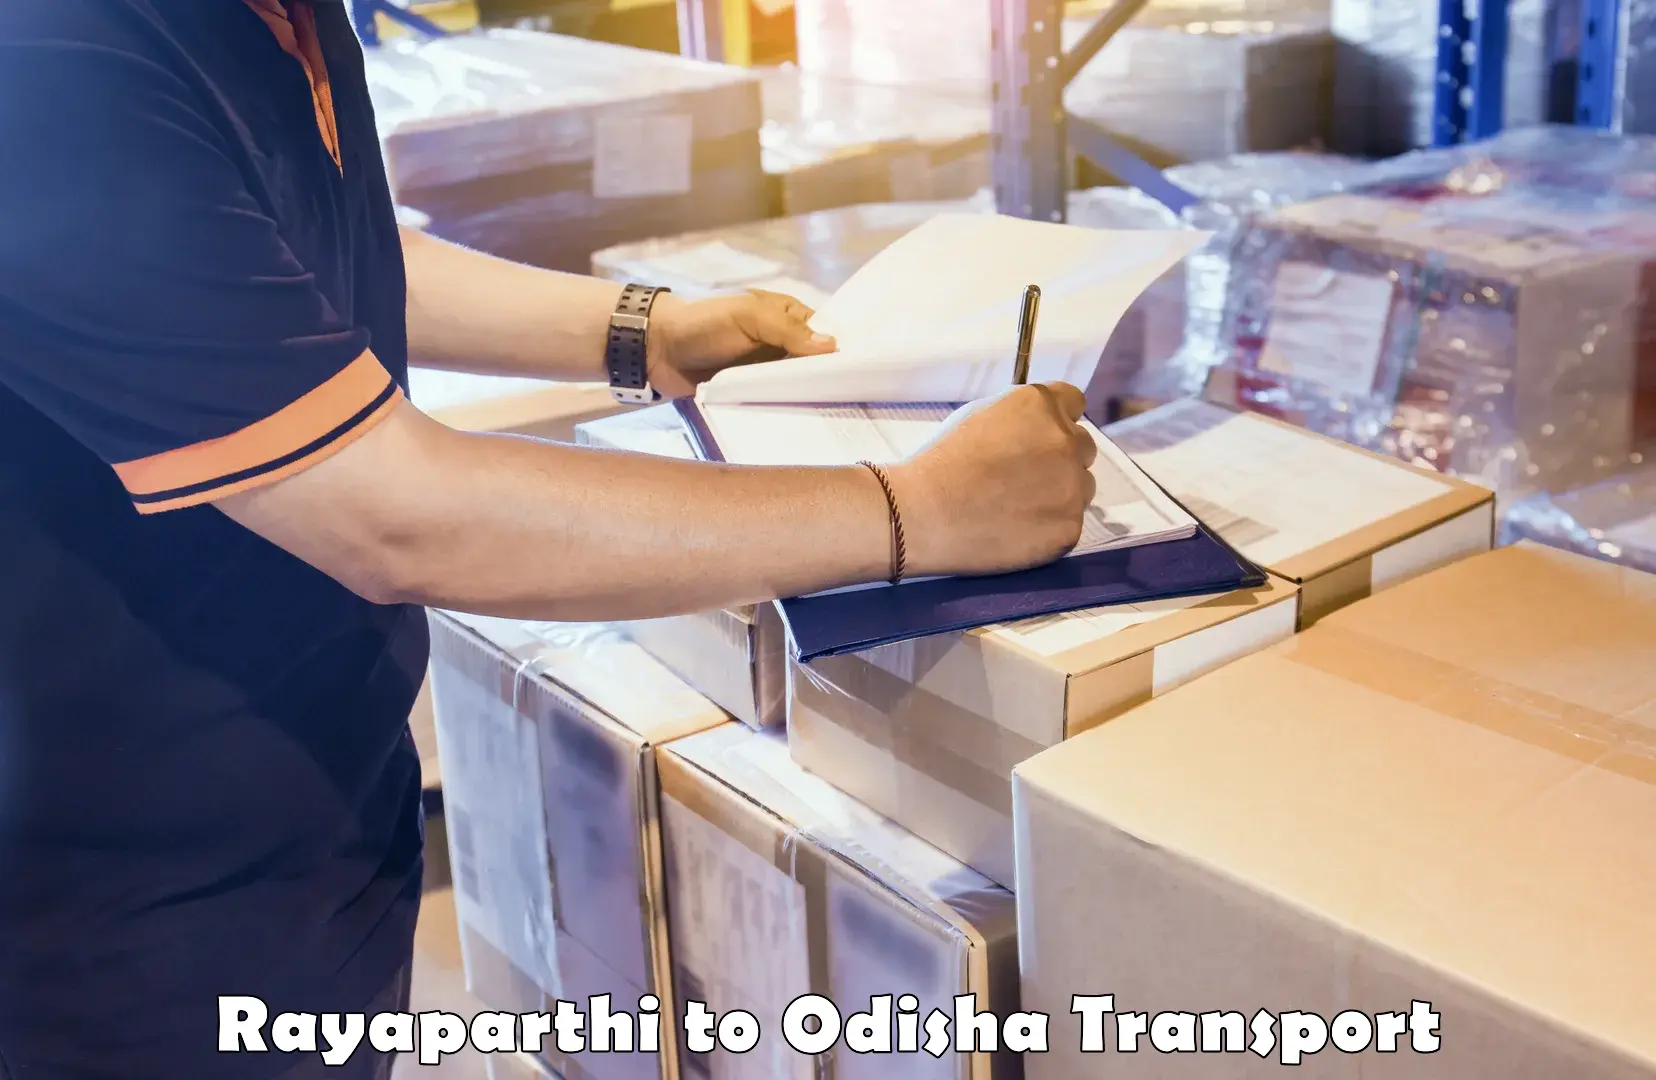 Nationwide transport services Rayaparthi to Tikiri